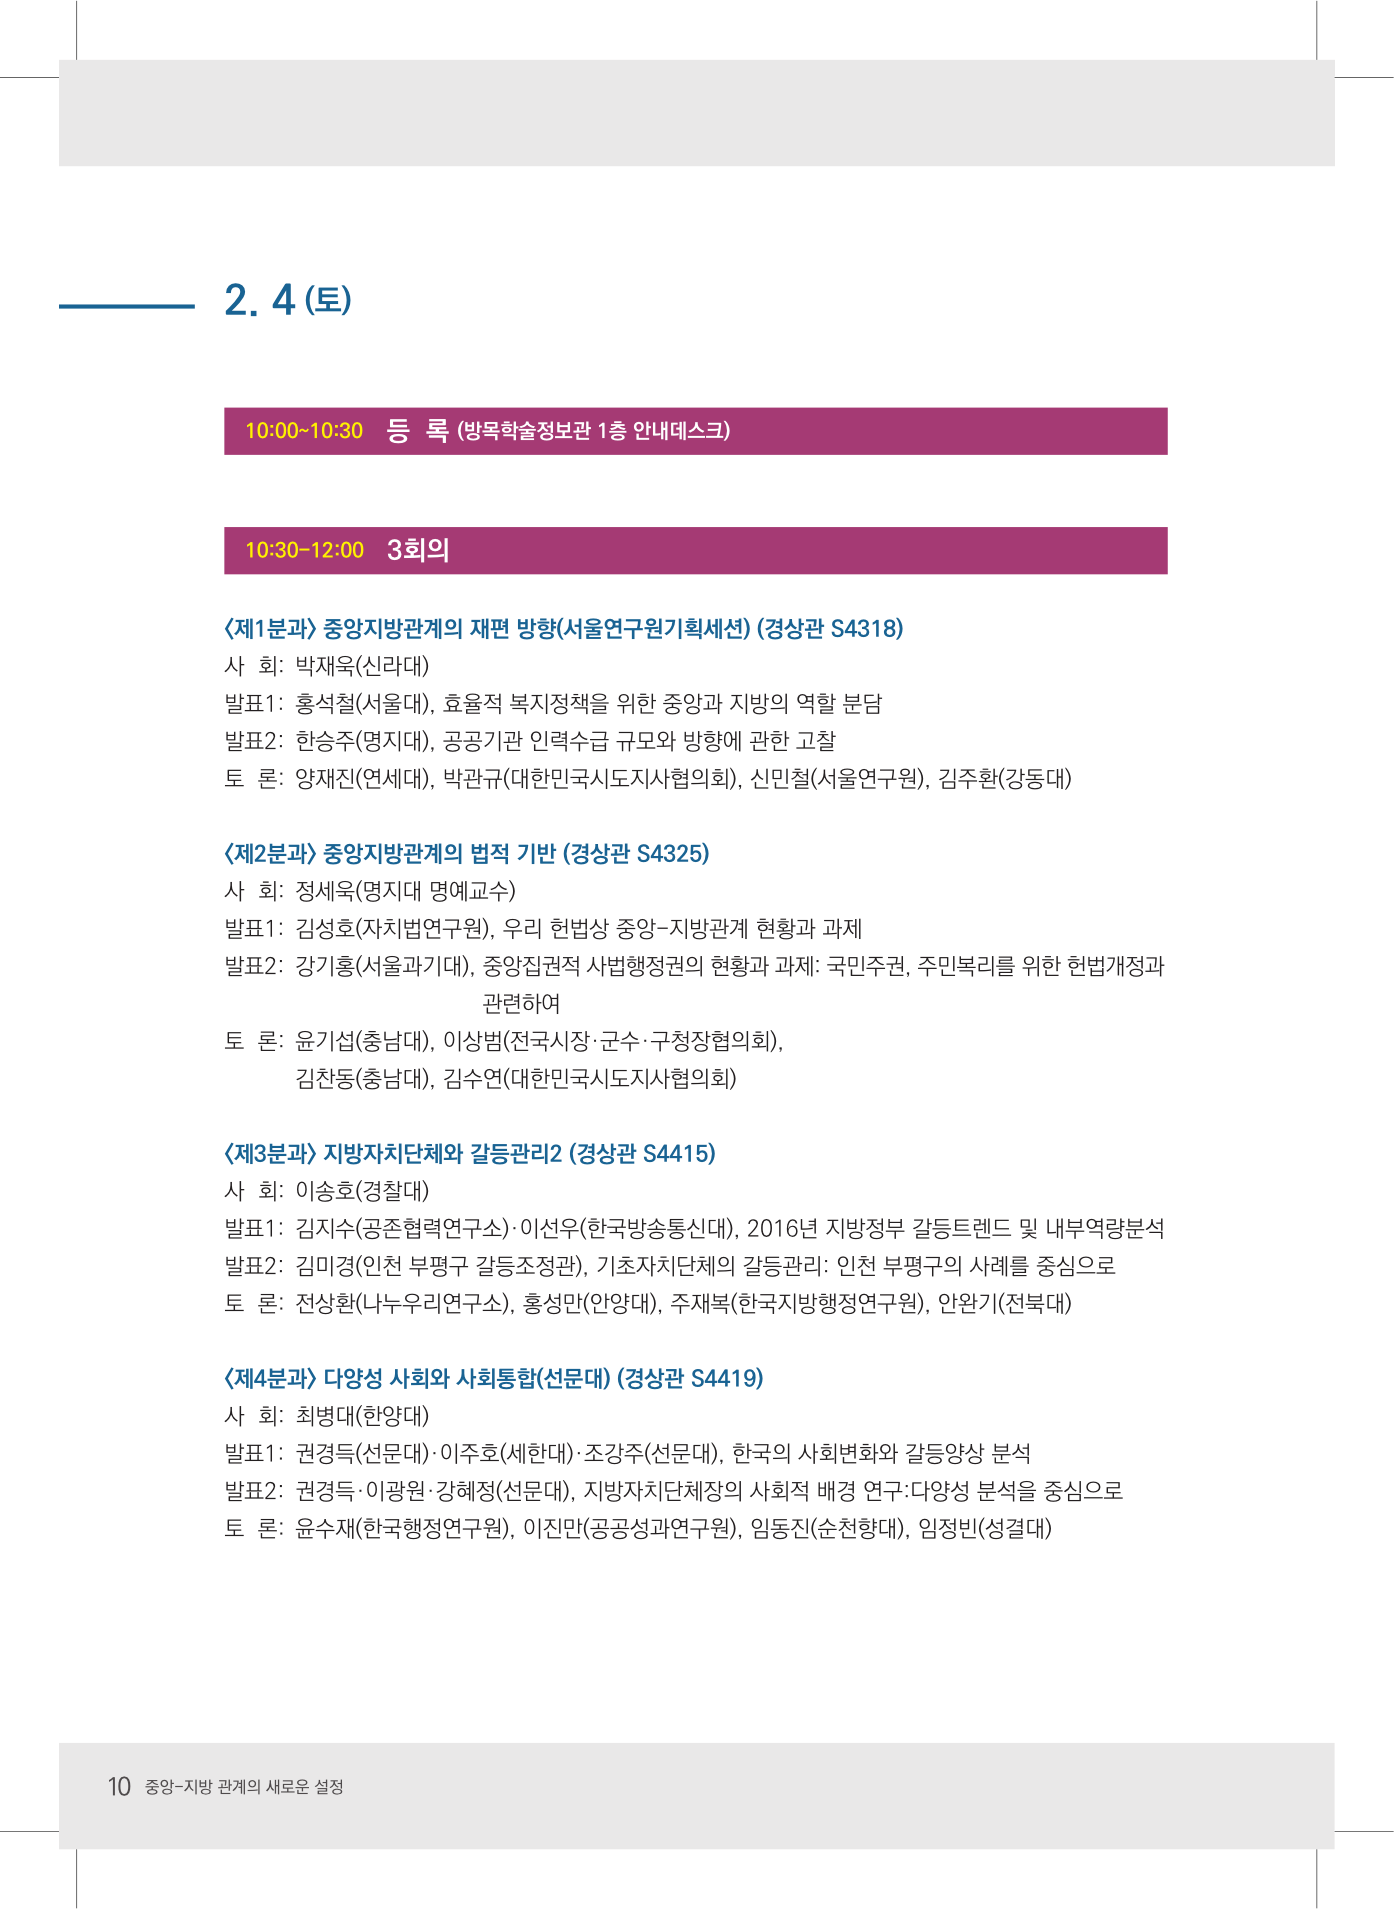 2017 한국지방자치학회 동계학술대회 초청장-10.jpg